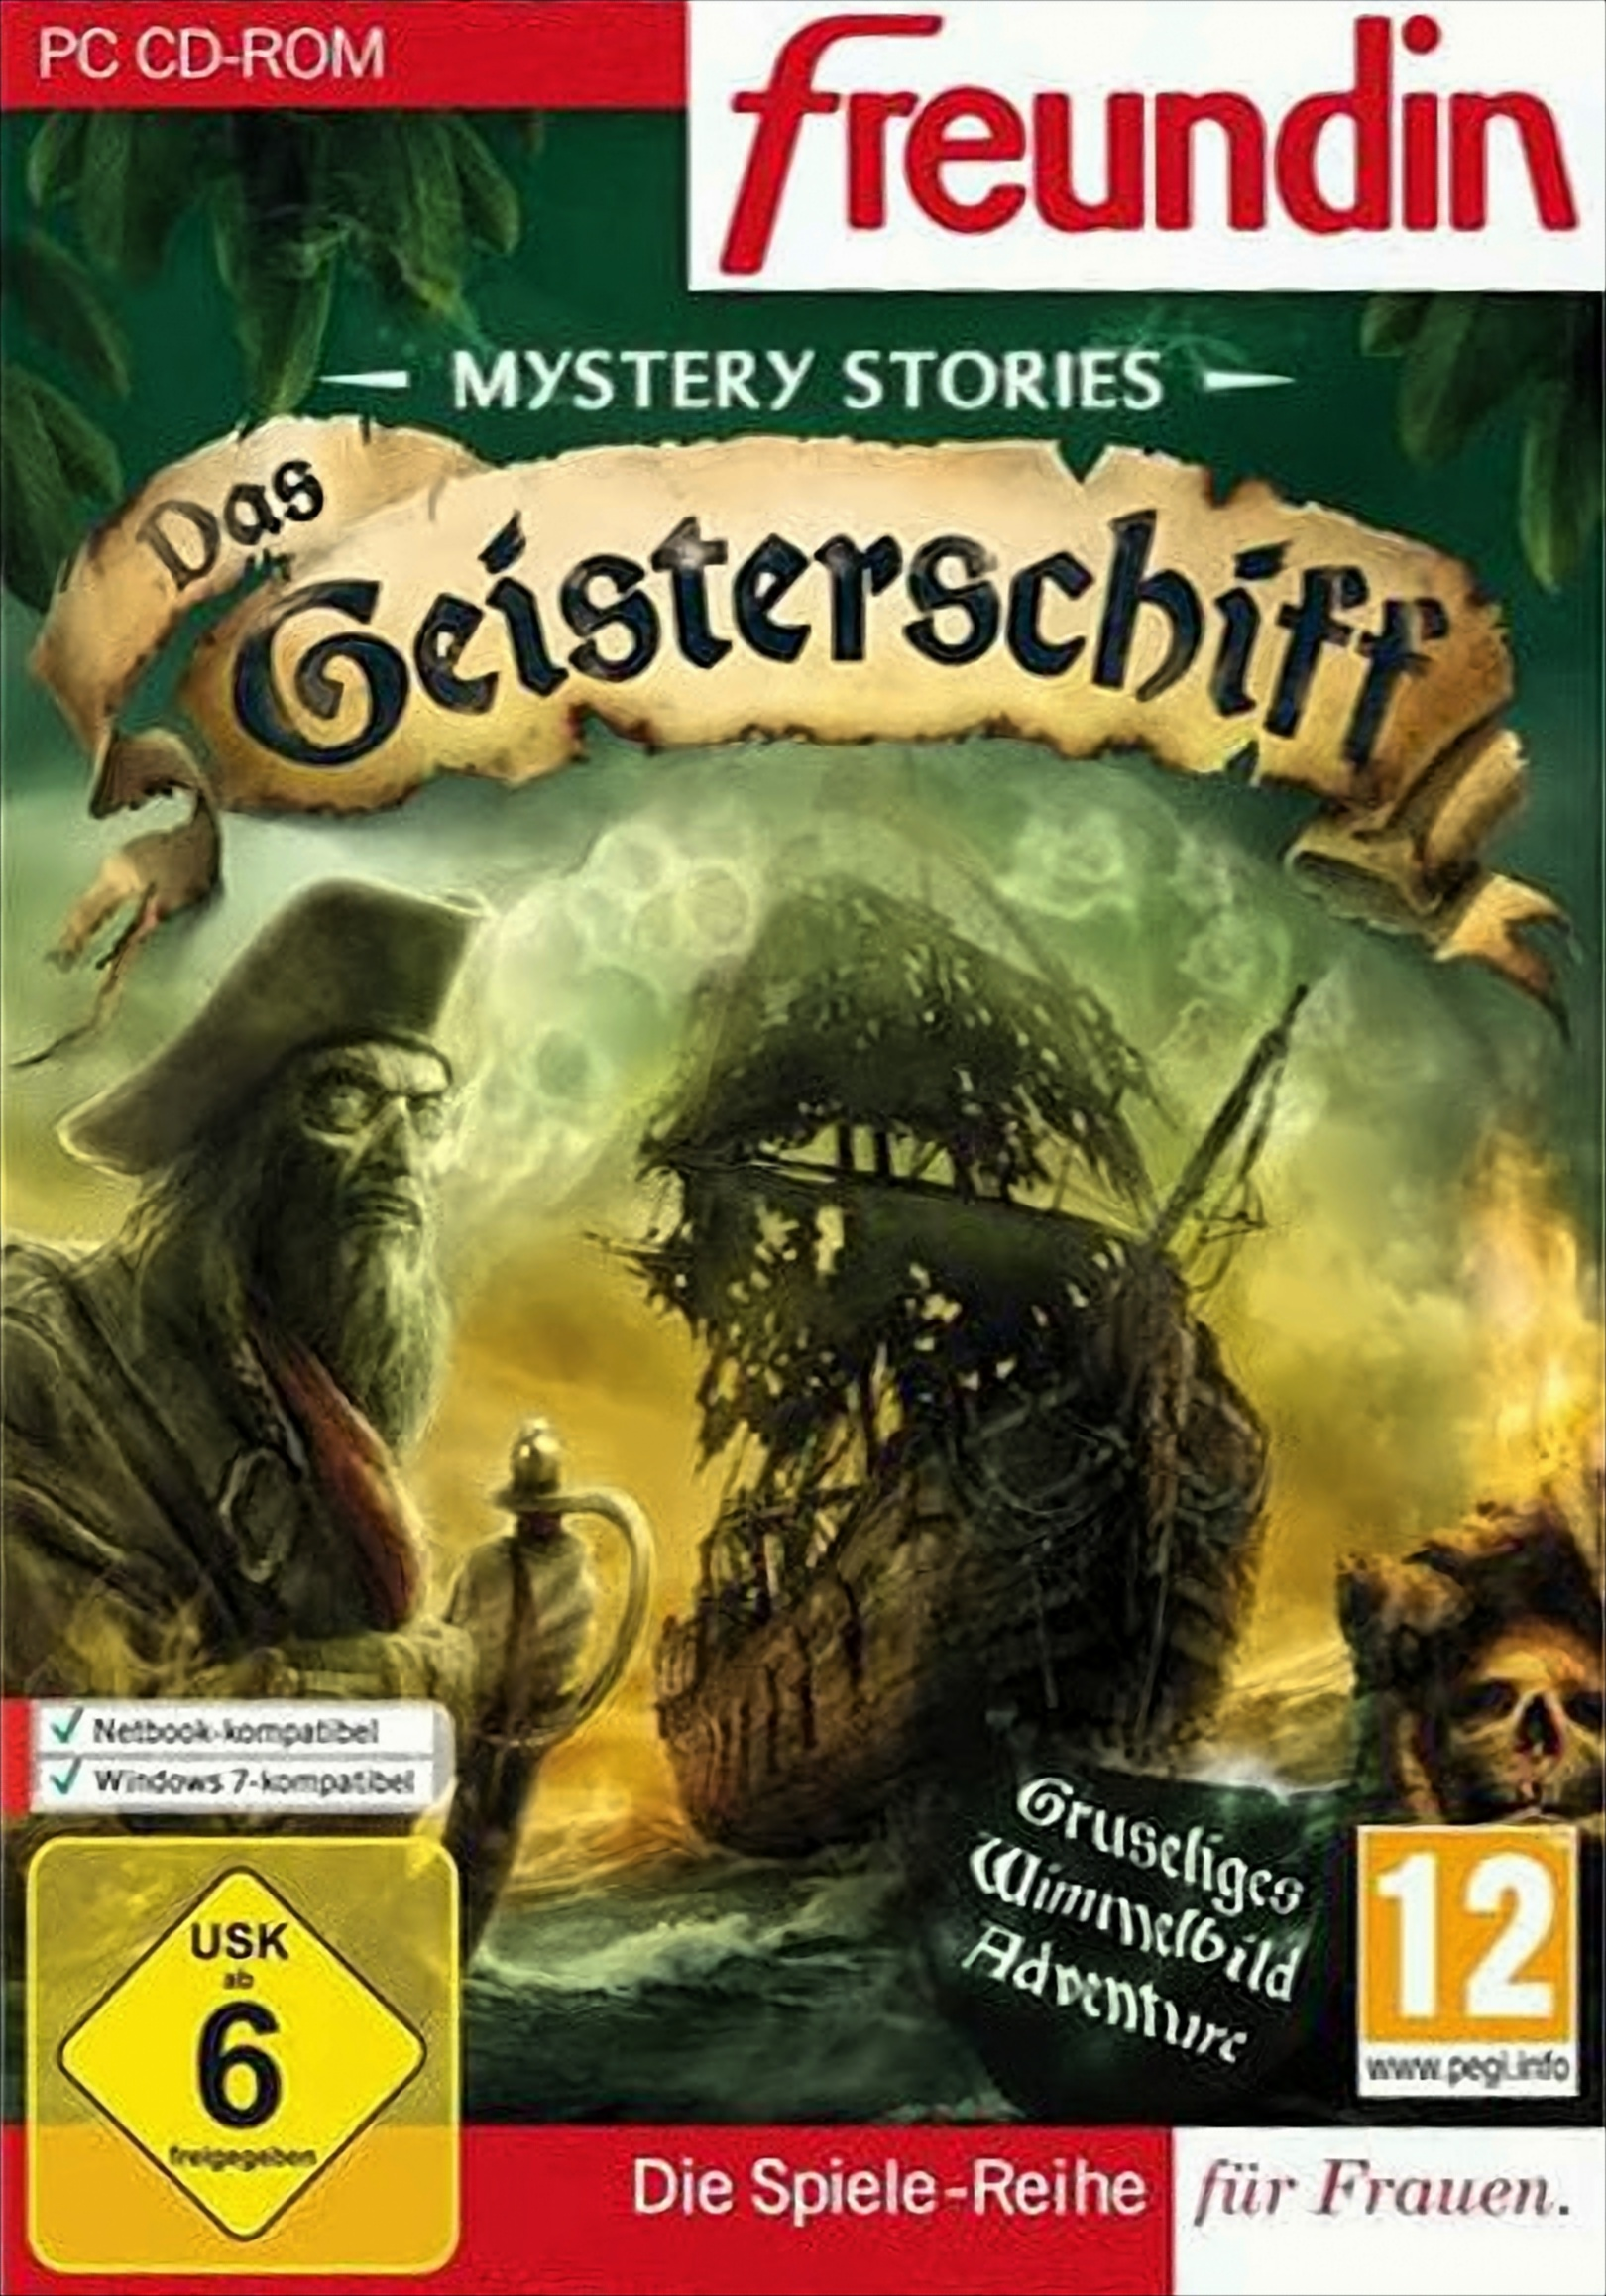 Das Mystery Stories: - [PC] Geisterschiff